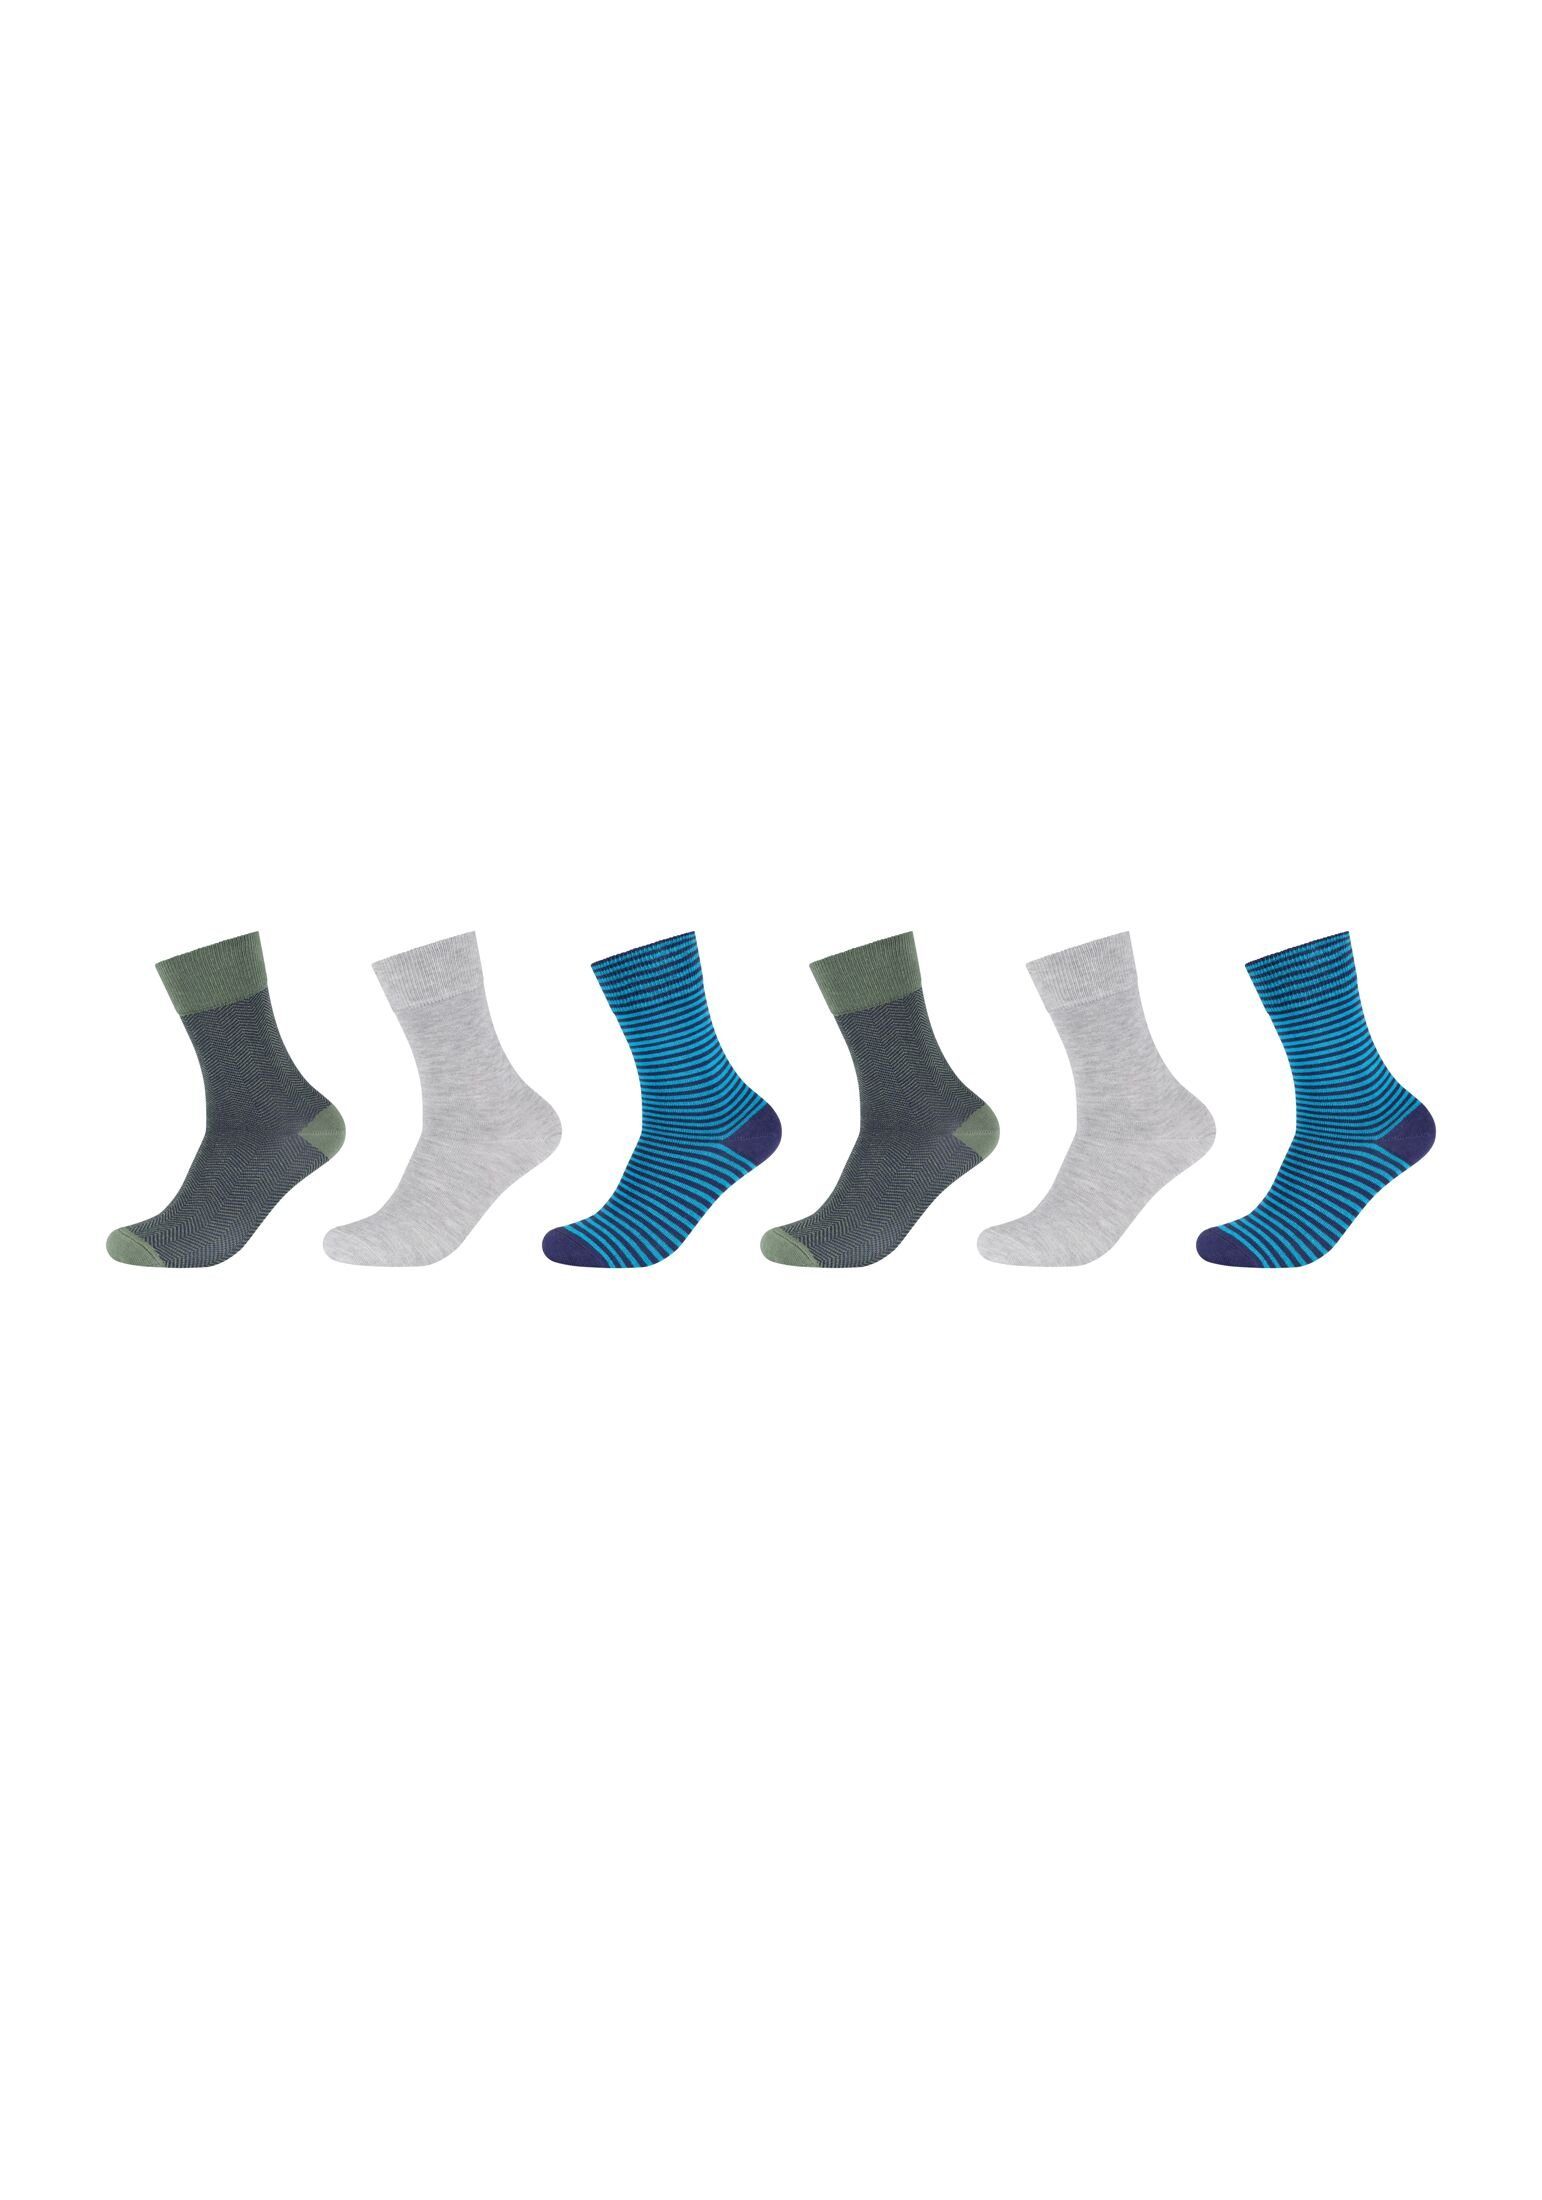 s.Oliver Socken Socken 6er Pack, Vielseitig: verschiedene Muster wie  Streifen oder Argyle